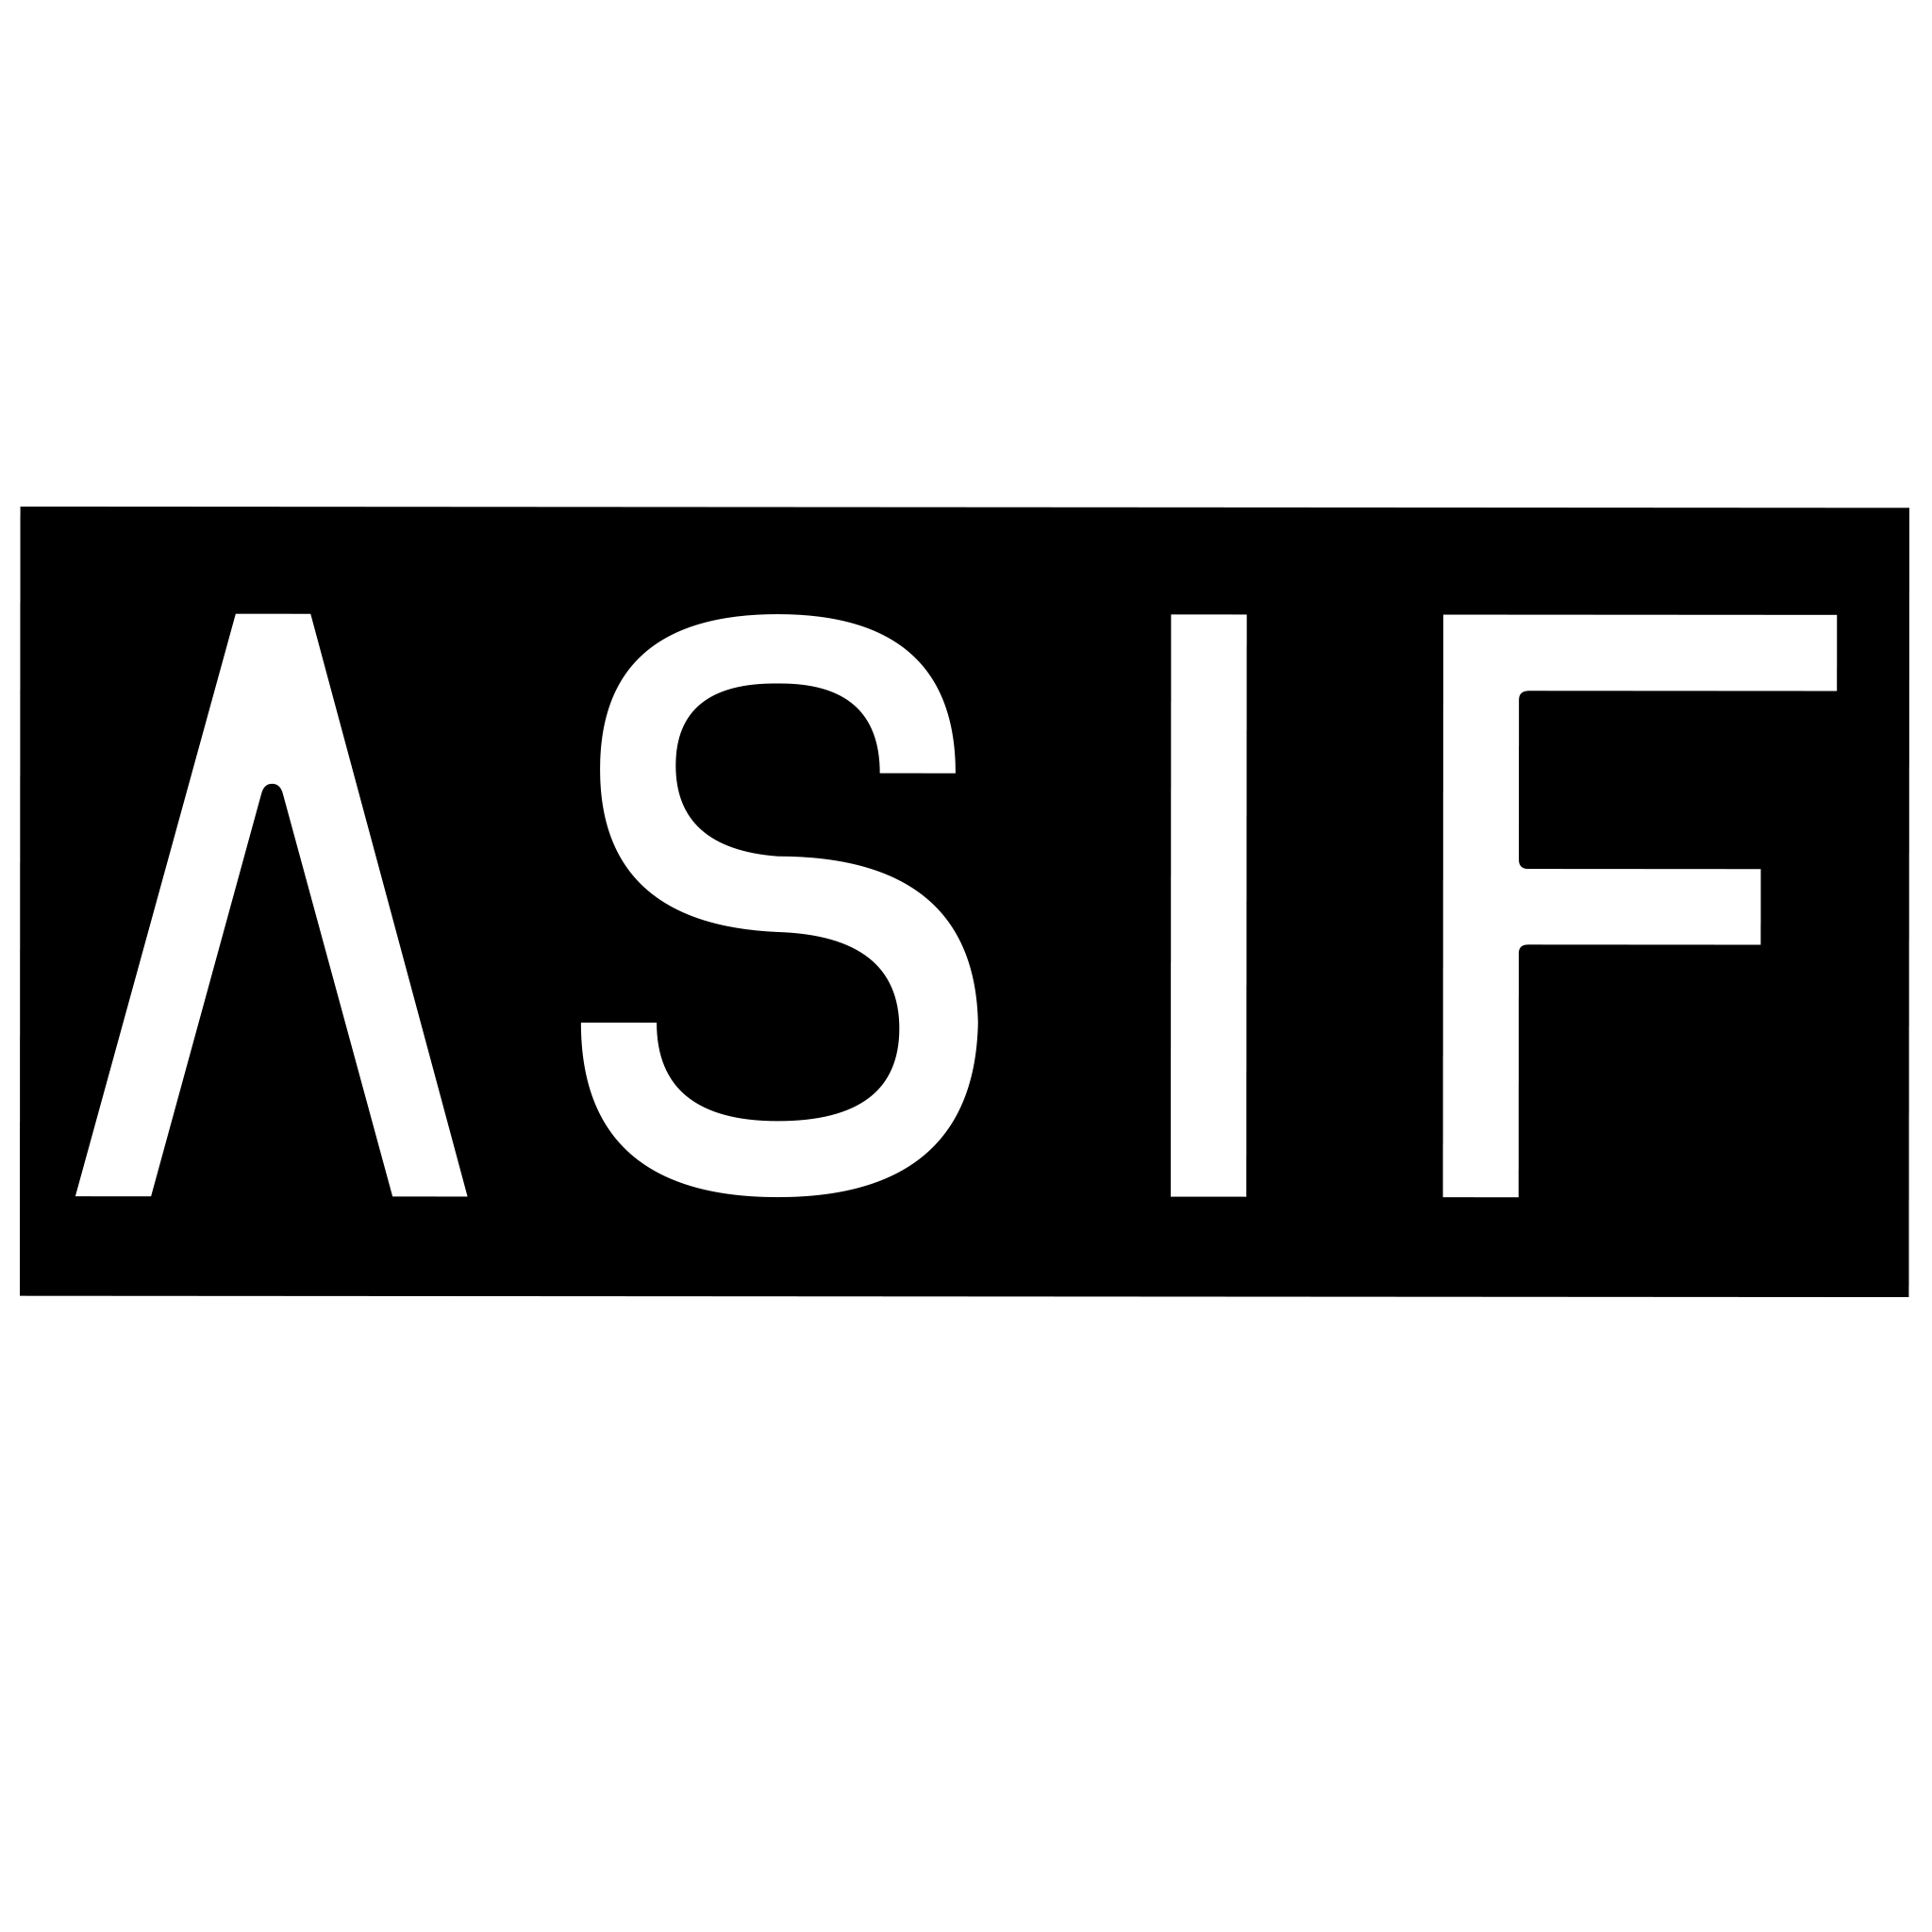 Asif Iqbal on LinkedIn: Asif_design: I will design simple custom logo for  $60 on fiverr.com